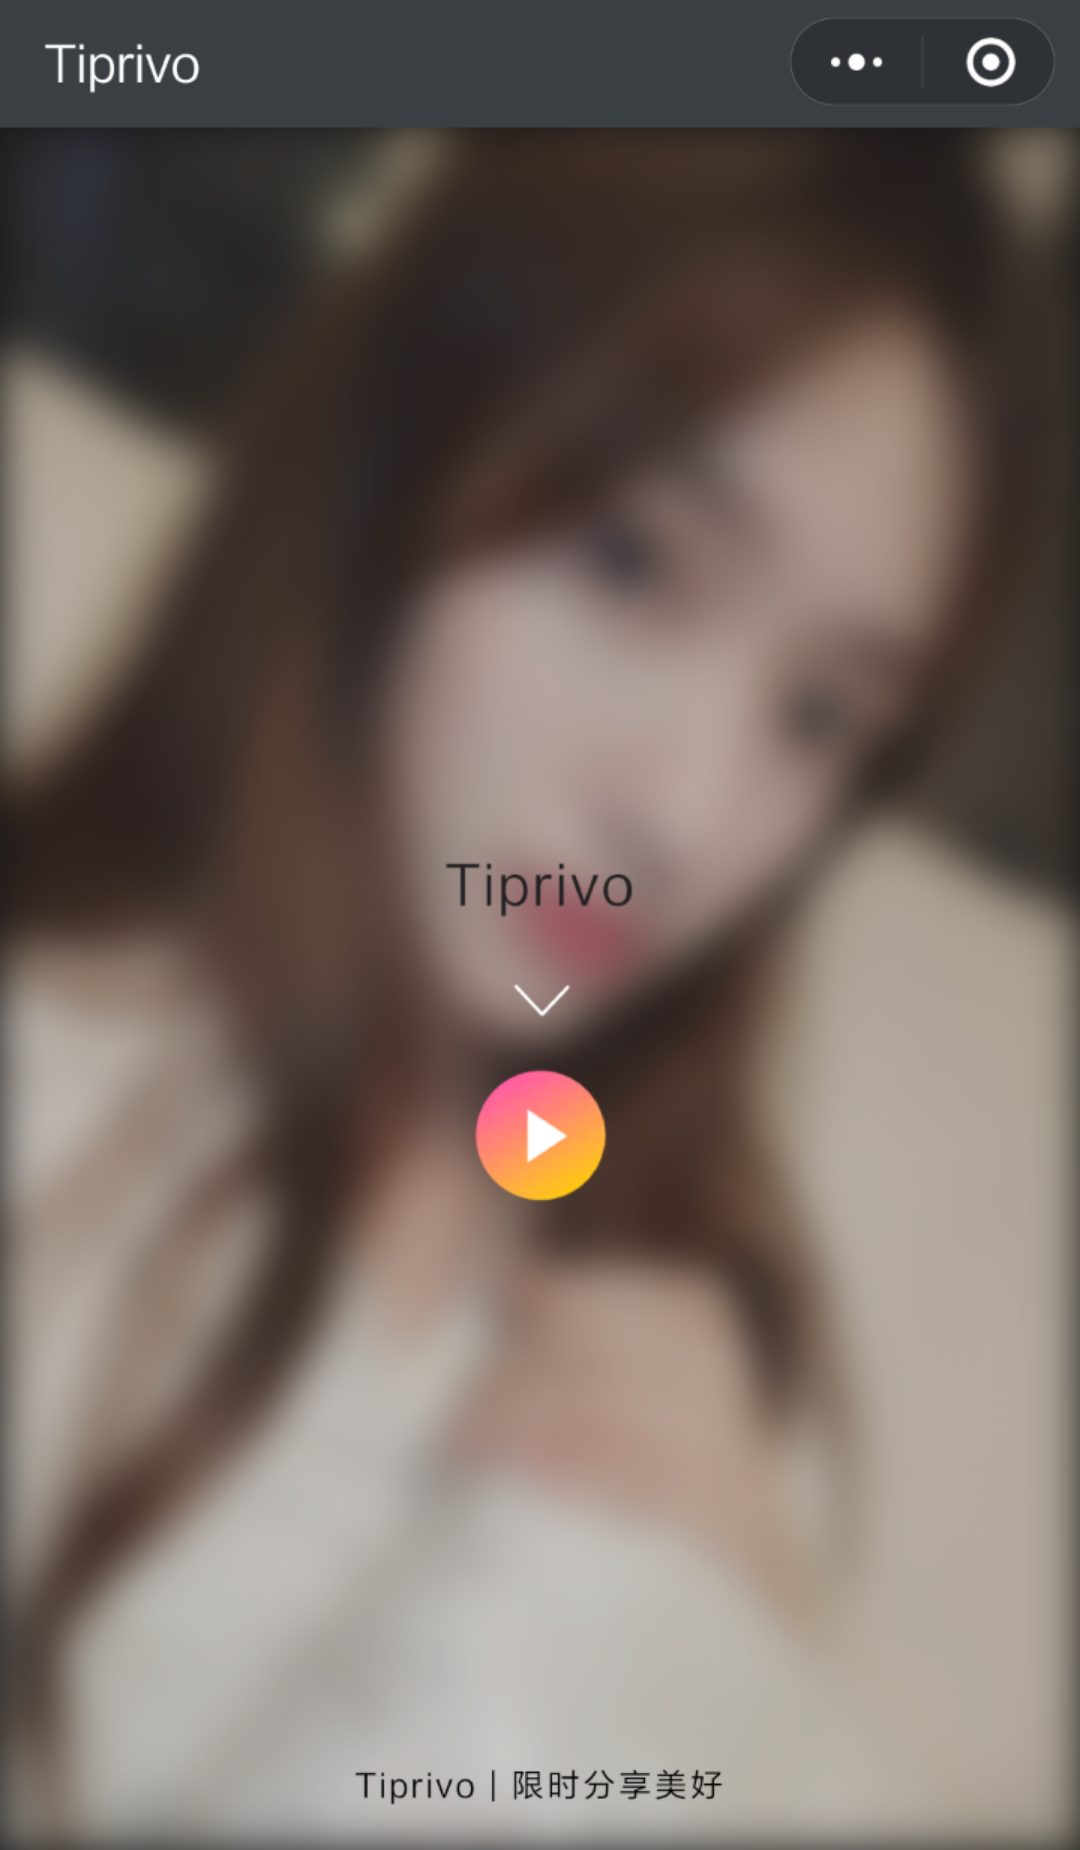 Tiprivo_Tiprivo小程序_Tiprivo微信小程序